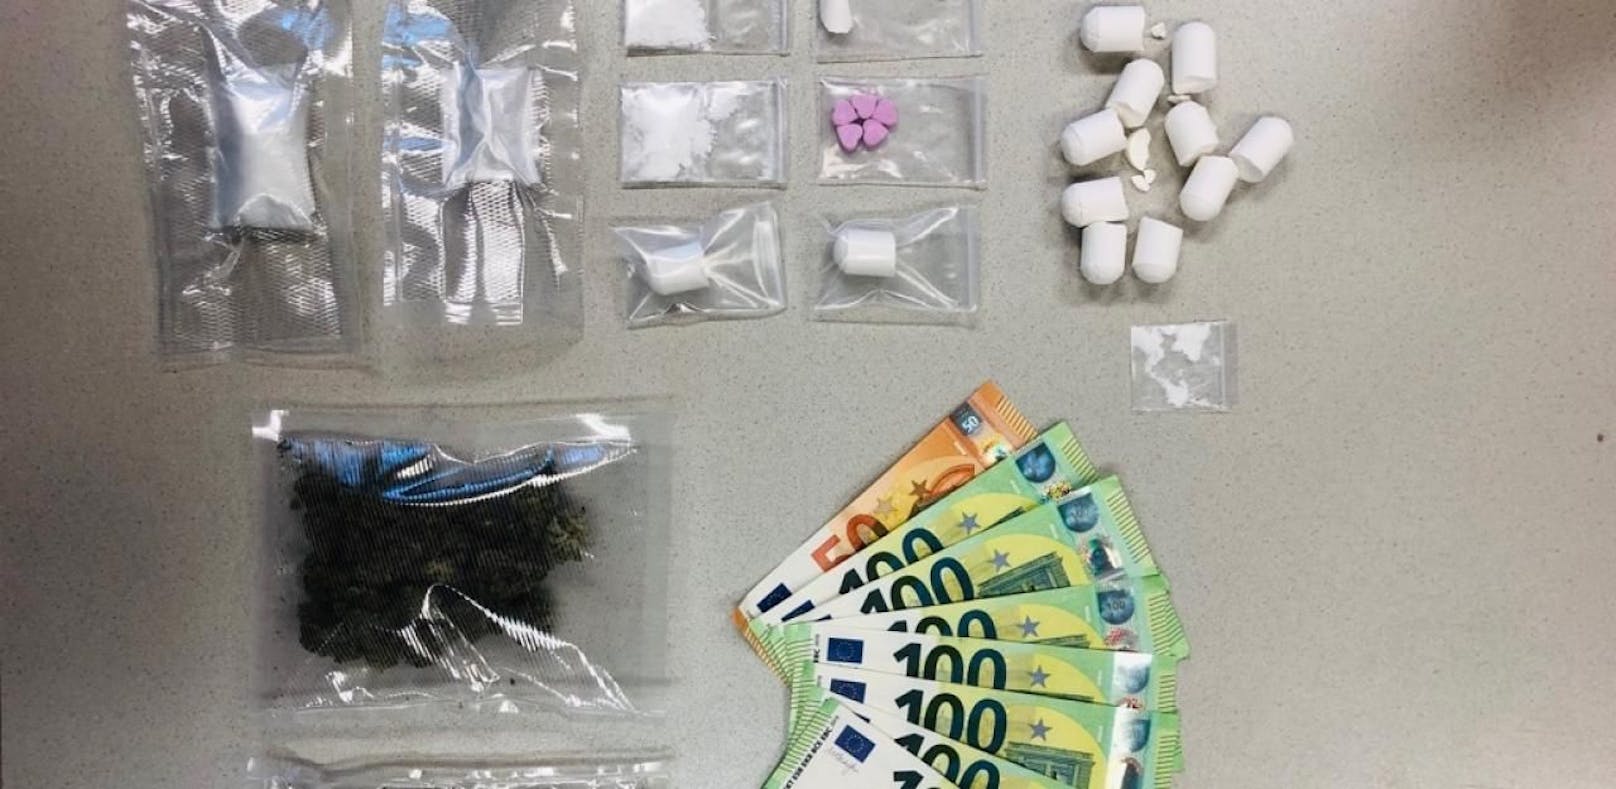 Kokain, Cannabis und Ecstasy wurde in der Wohnung entdeckt.